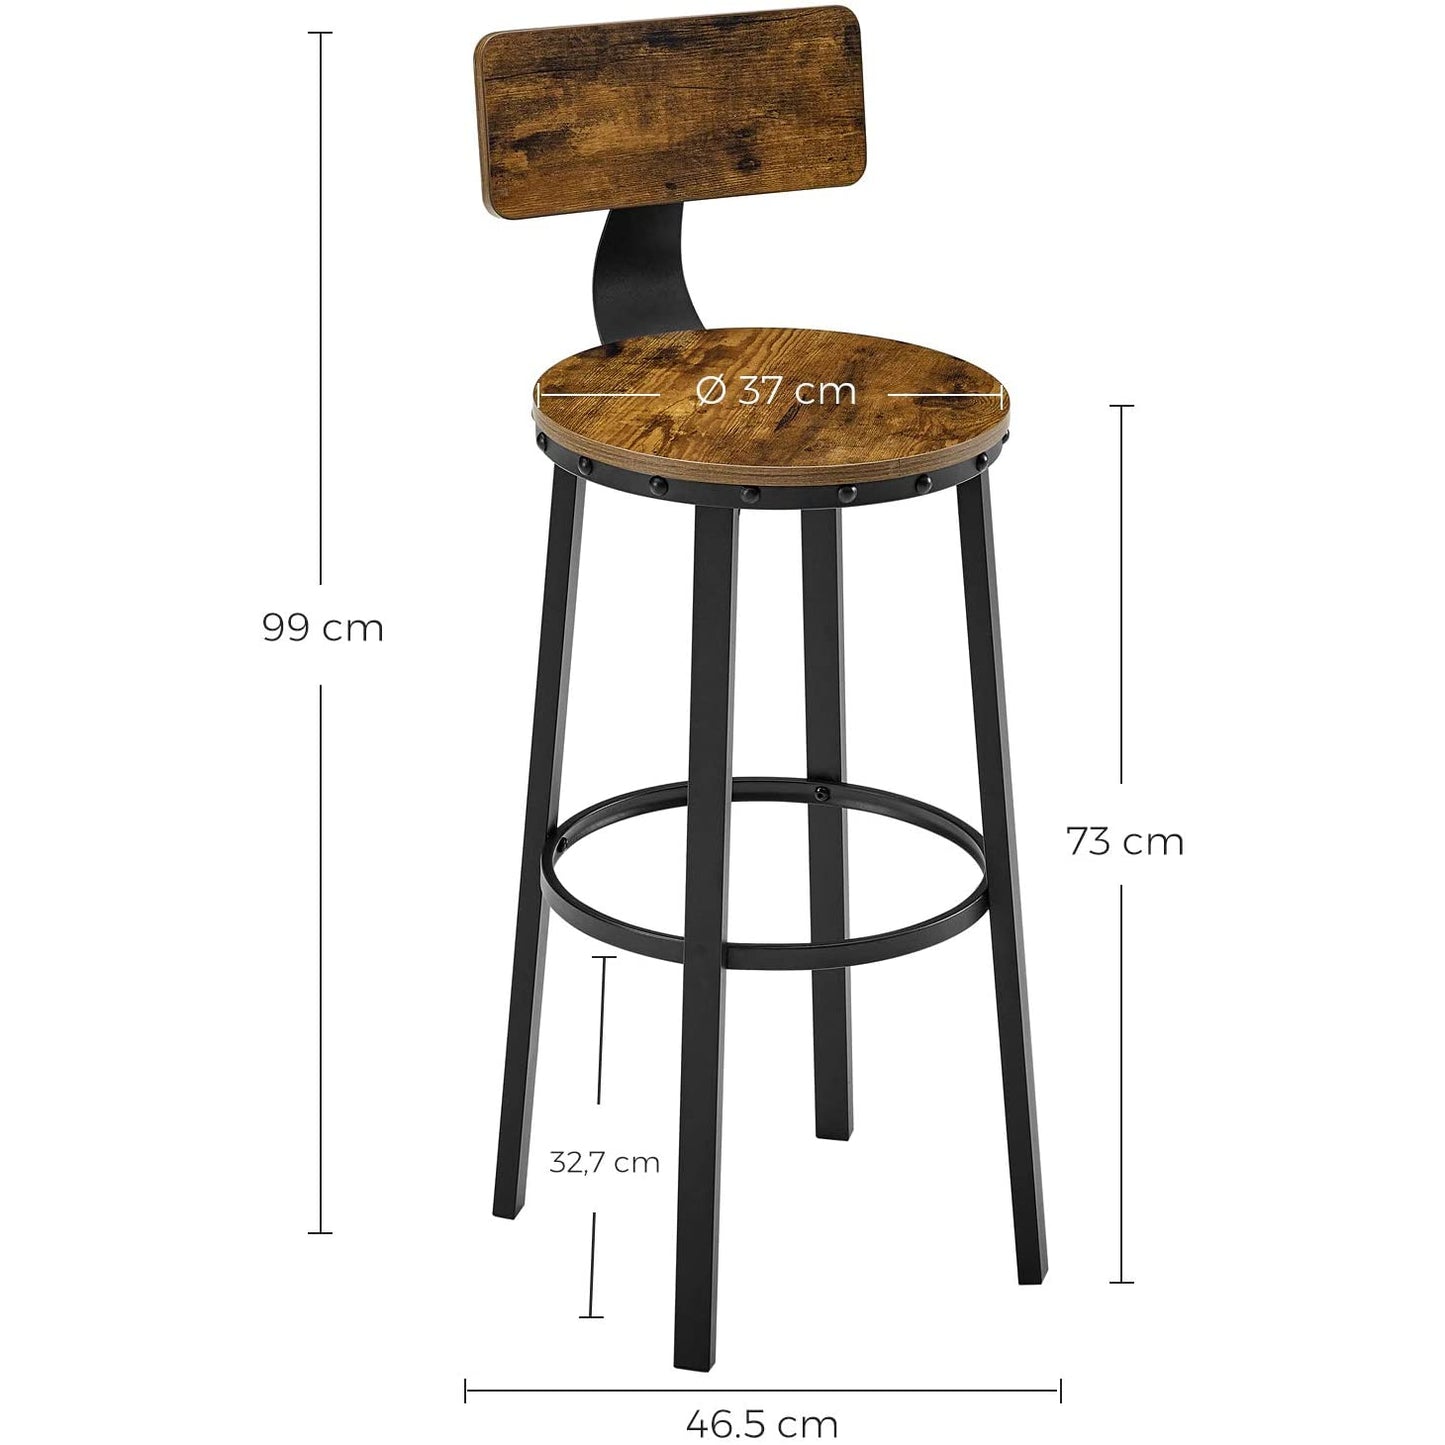 Tabourets de bar Gordon de Nancy 2 pièces - Chaises de bar avec repose-pieds - Tabouret de bar industriel - Industriel - Stable - 37 x 46,5 x 99 cm (L x L x H) 